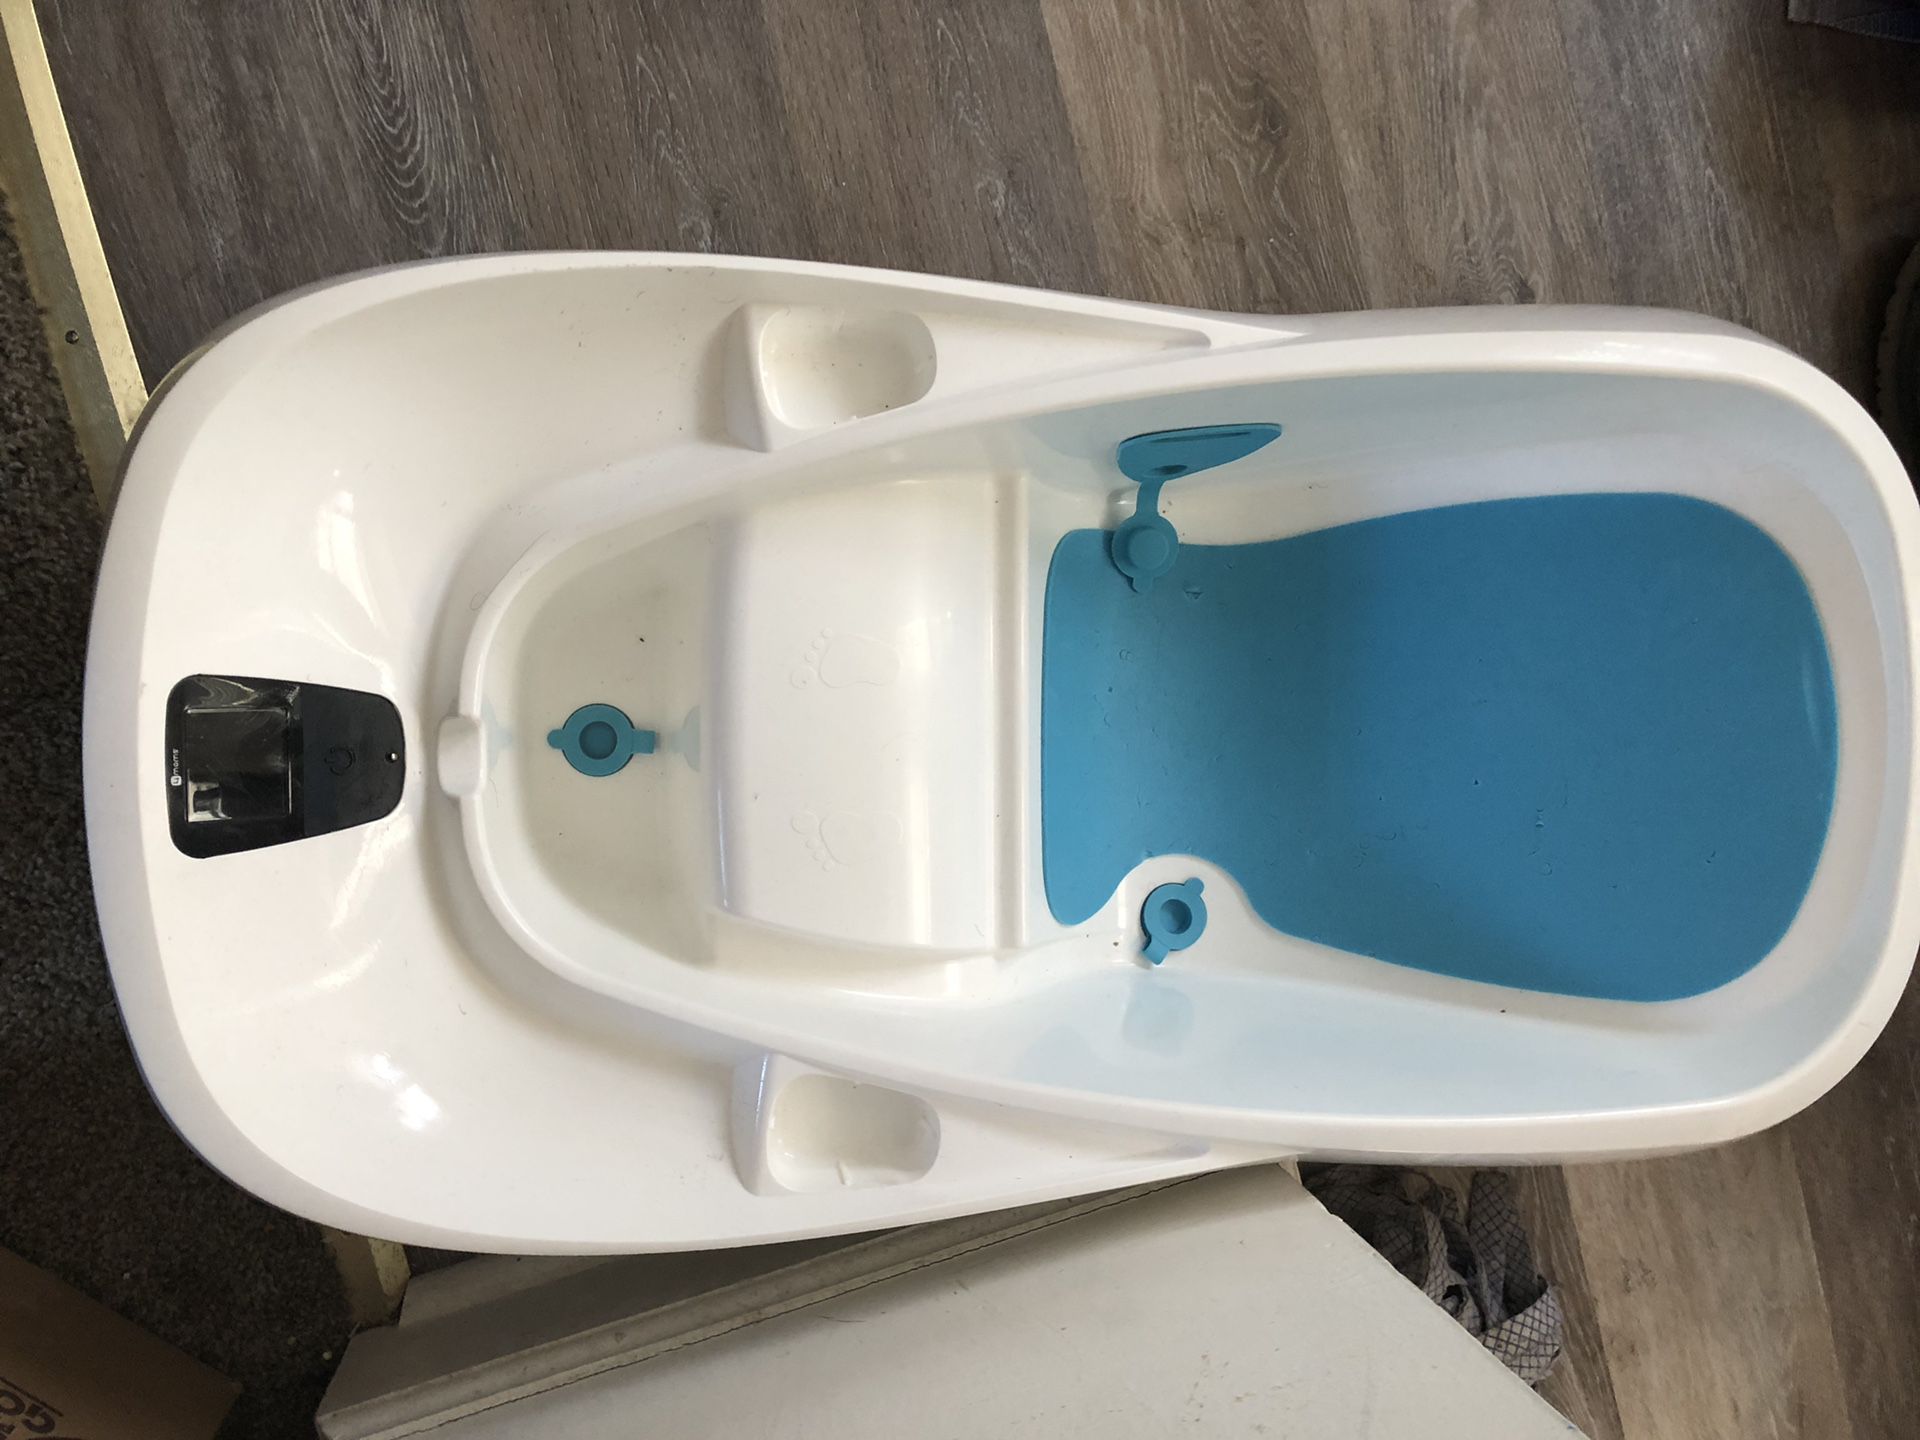 Baby bath tub with temperature reader